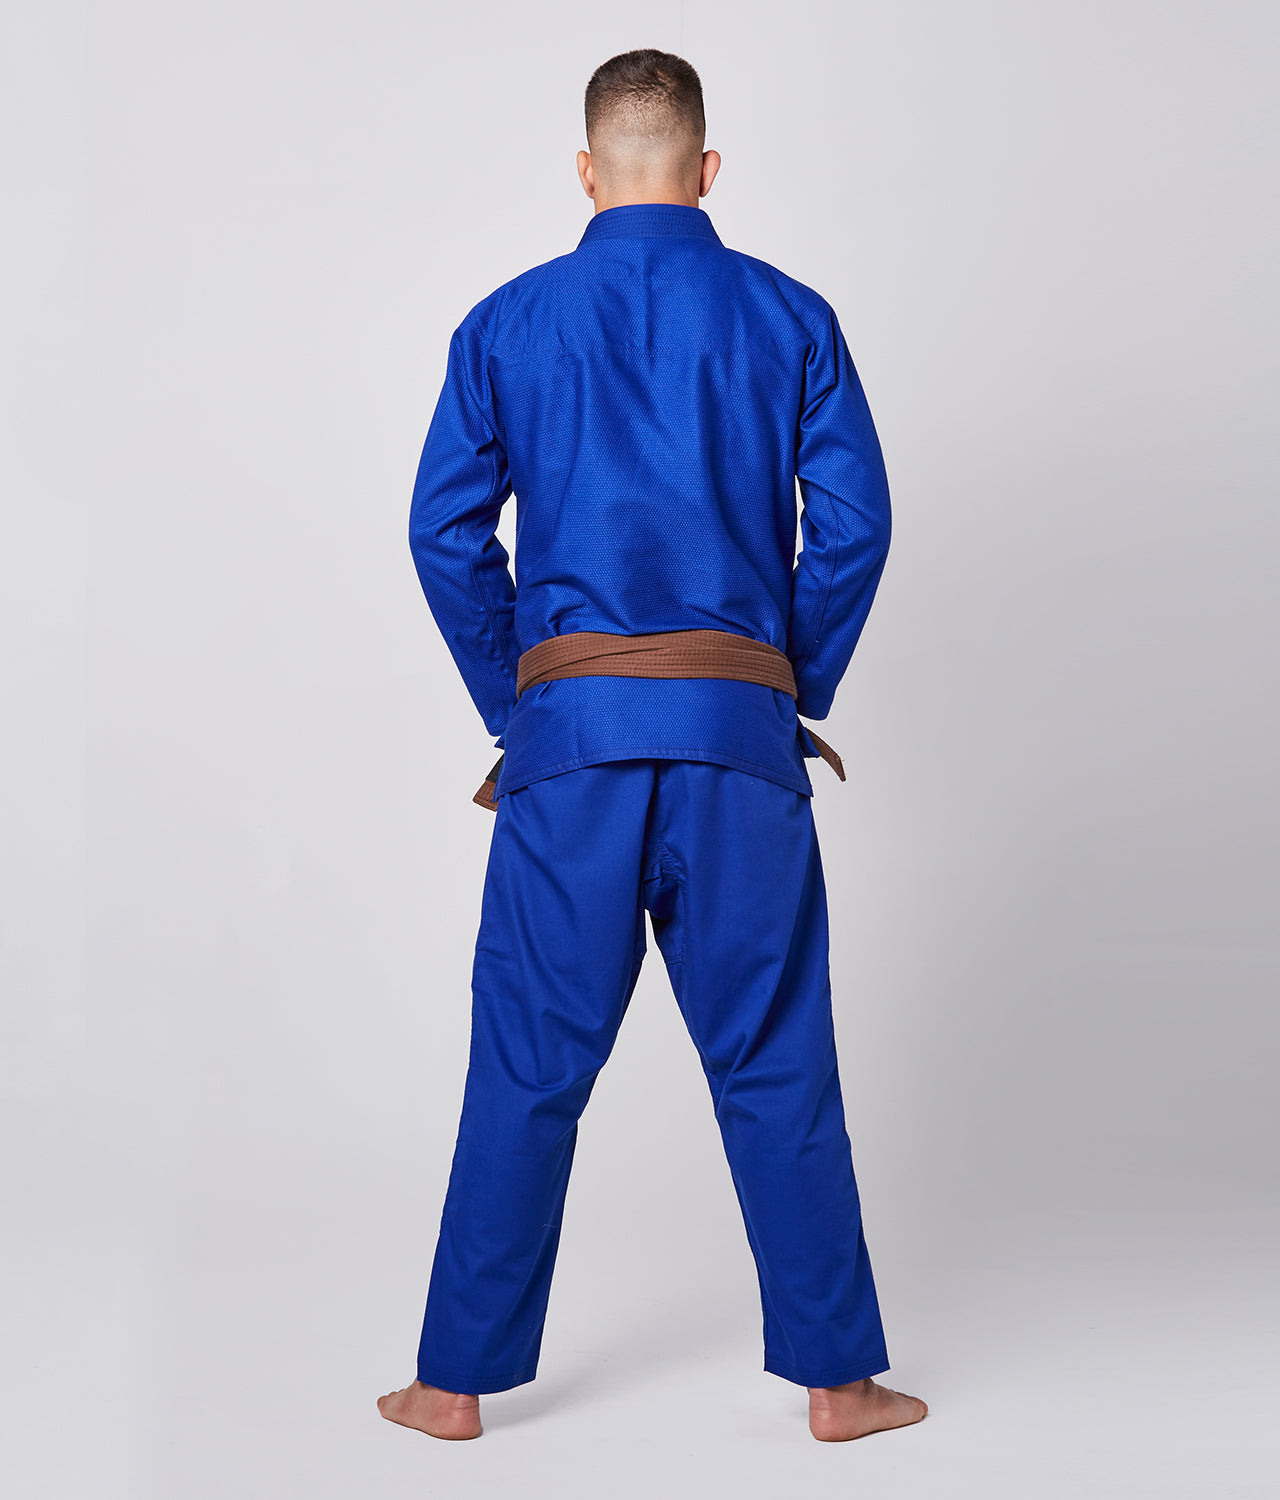 Elite Sports Men's Essential Blue Brazilian Jiu Jitsu BJJ Gi Back View